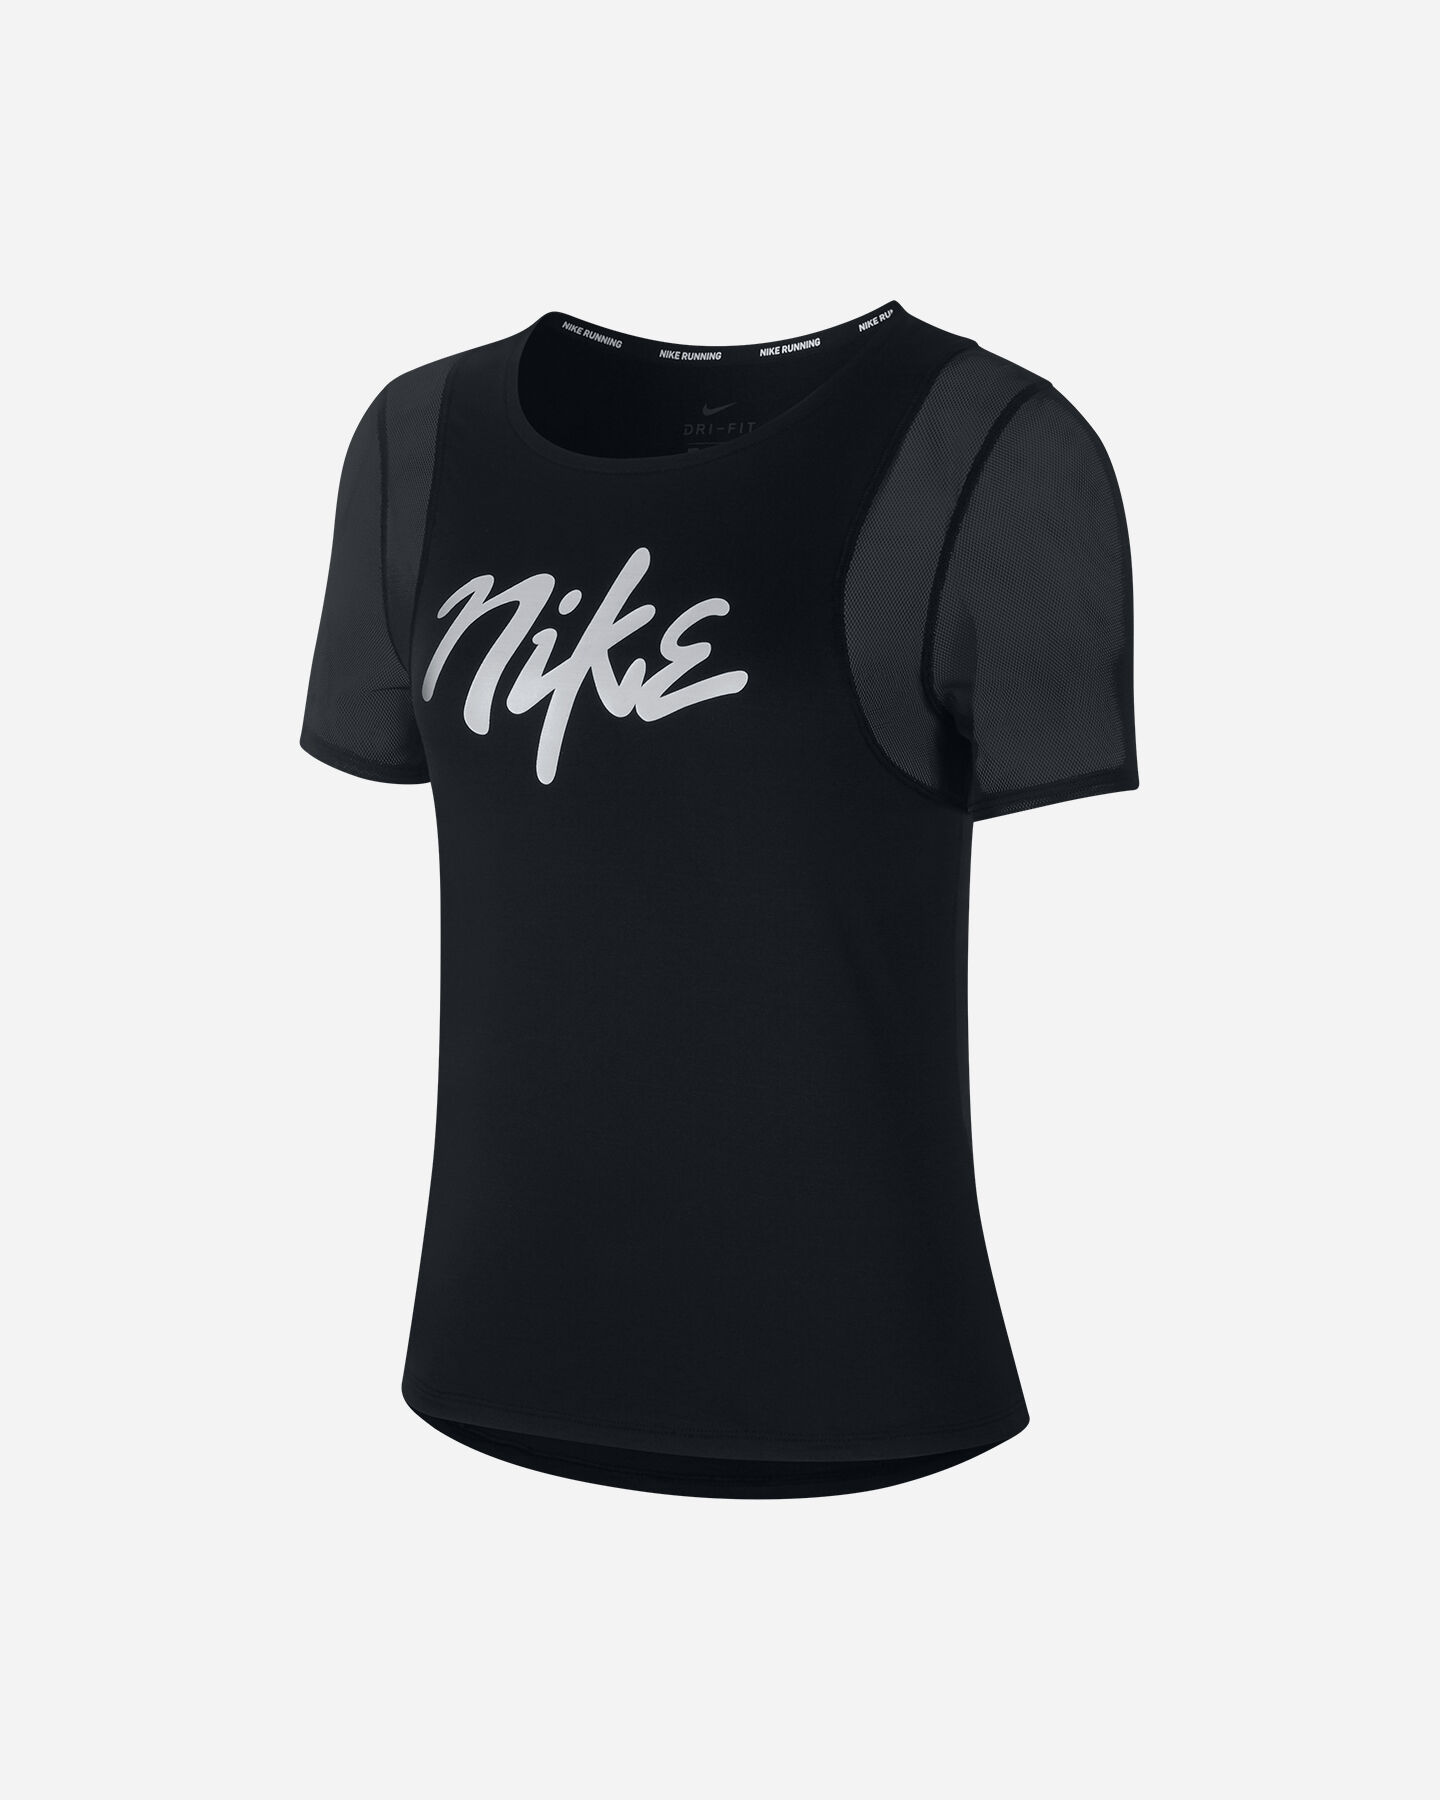  T-Shirt running NIKE RUNWAY W S5195841|010|XS scatto 0